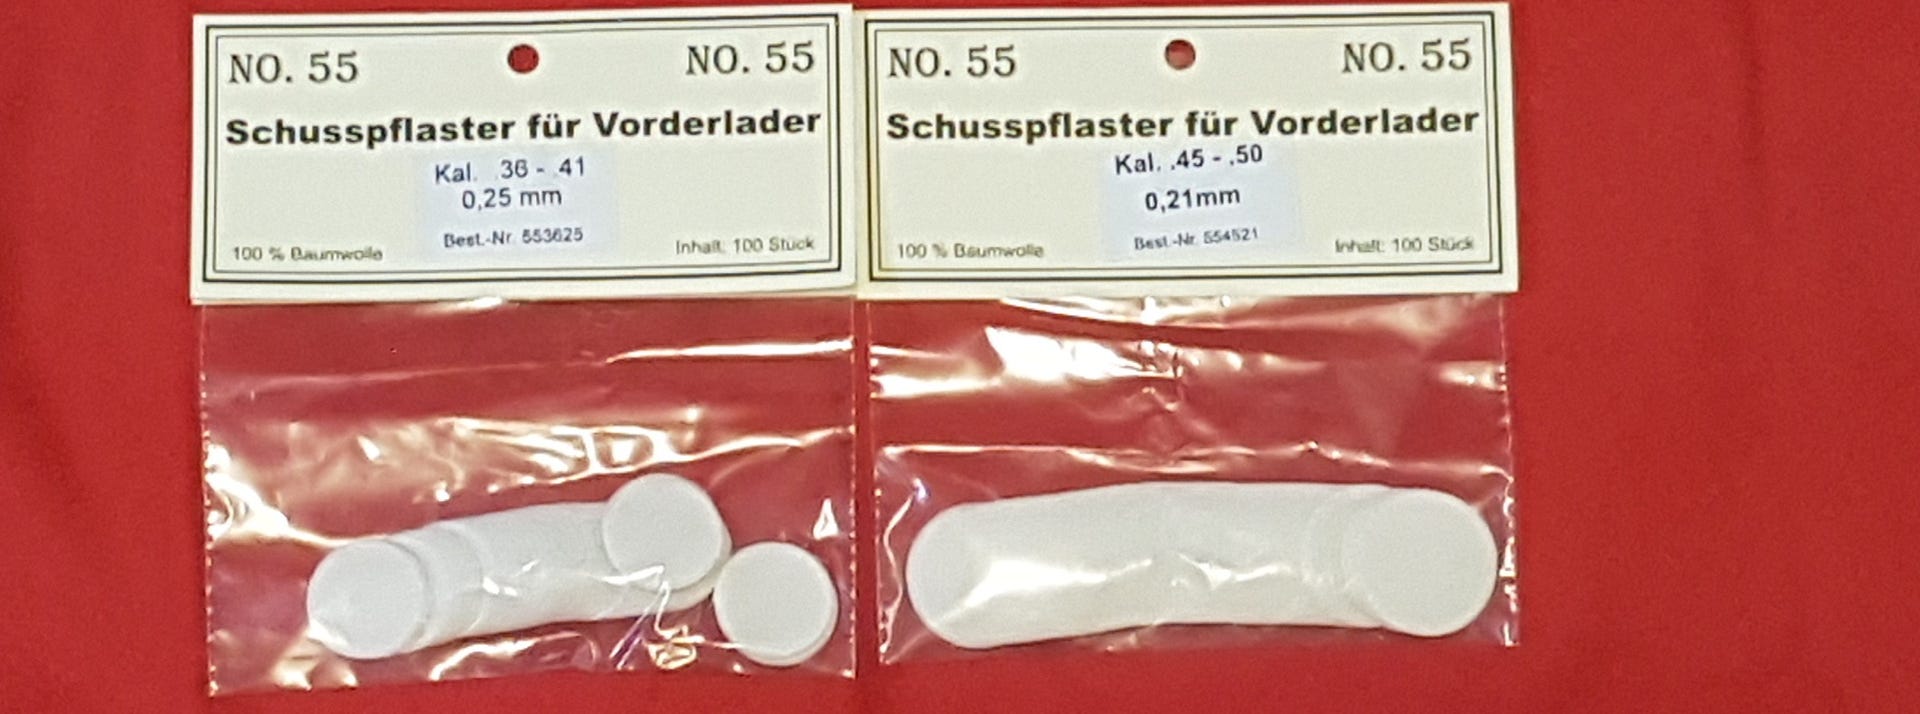 Baumwoll Schusspflaster / Vorderlader